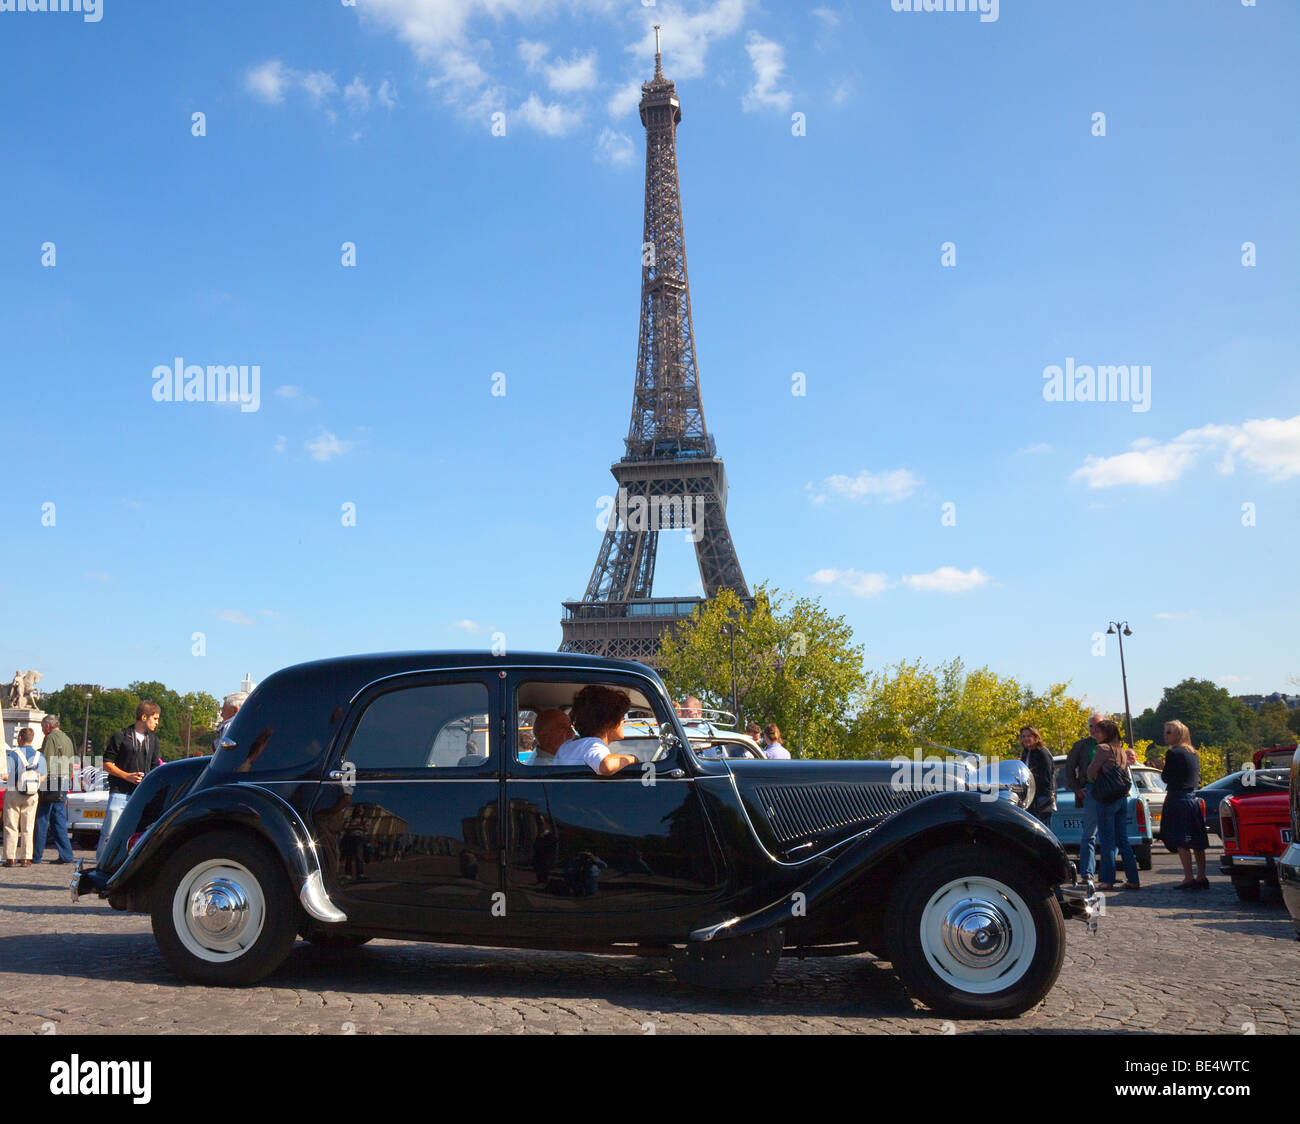 Licht-15 Citroen als von "Maigret" der französischen Detektiv getrieben auf dem Eiffelturm in Paris Frankreich Stockfoto